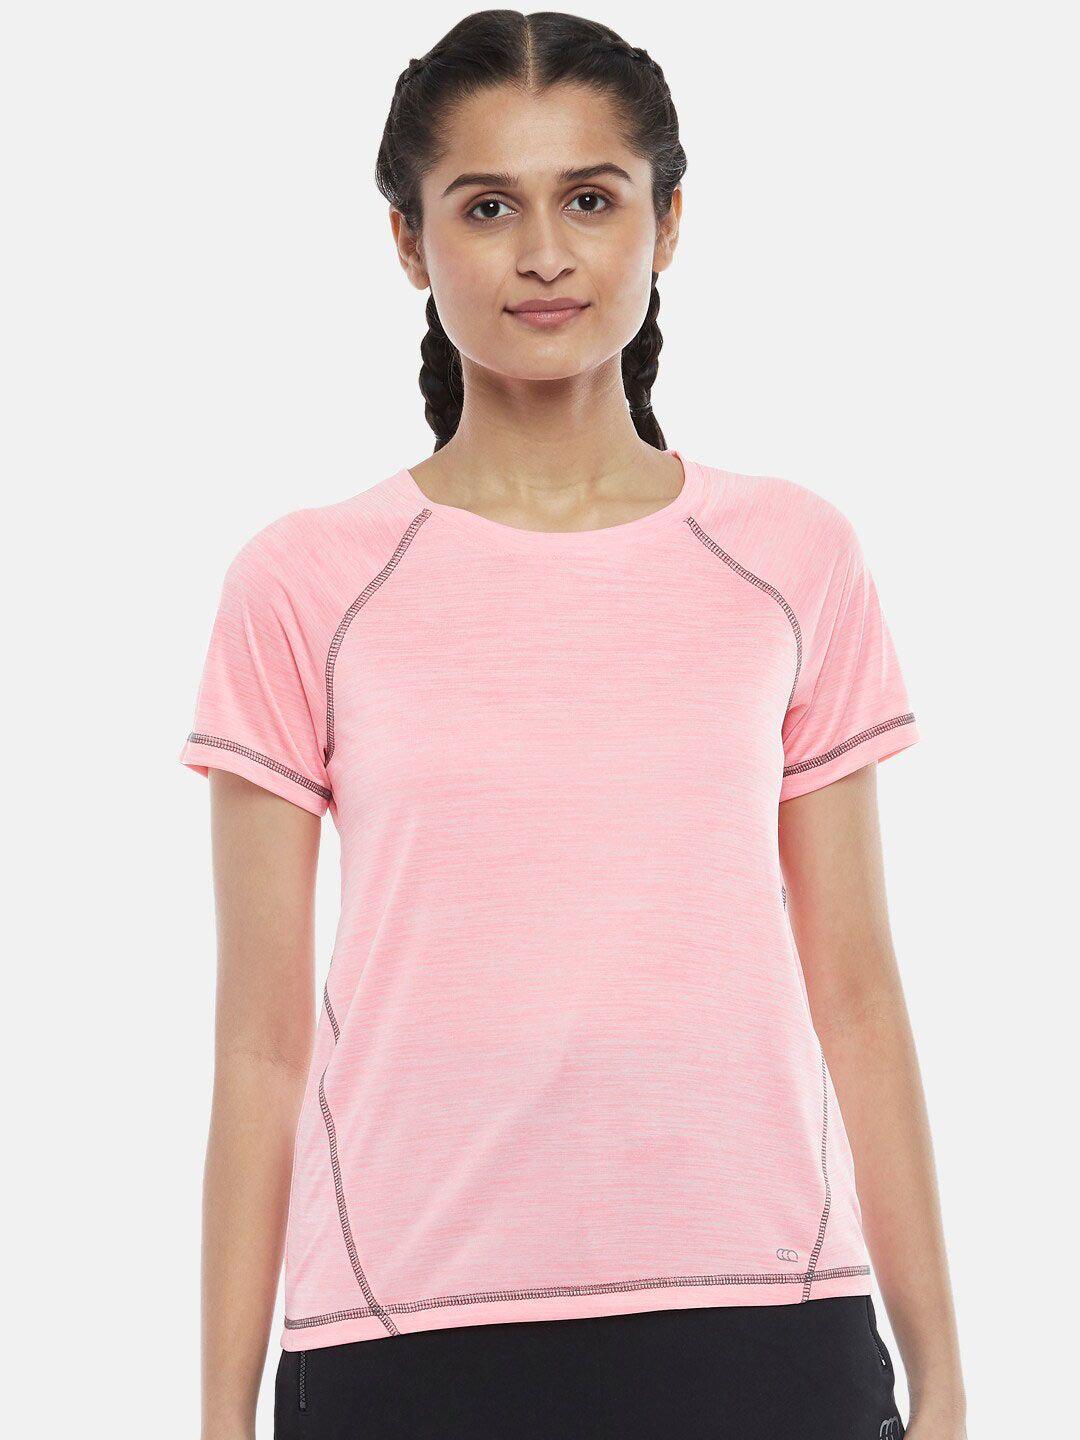 Ajile by Pantaloons Women Pink T-shirt